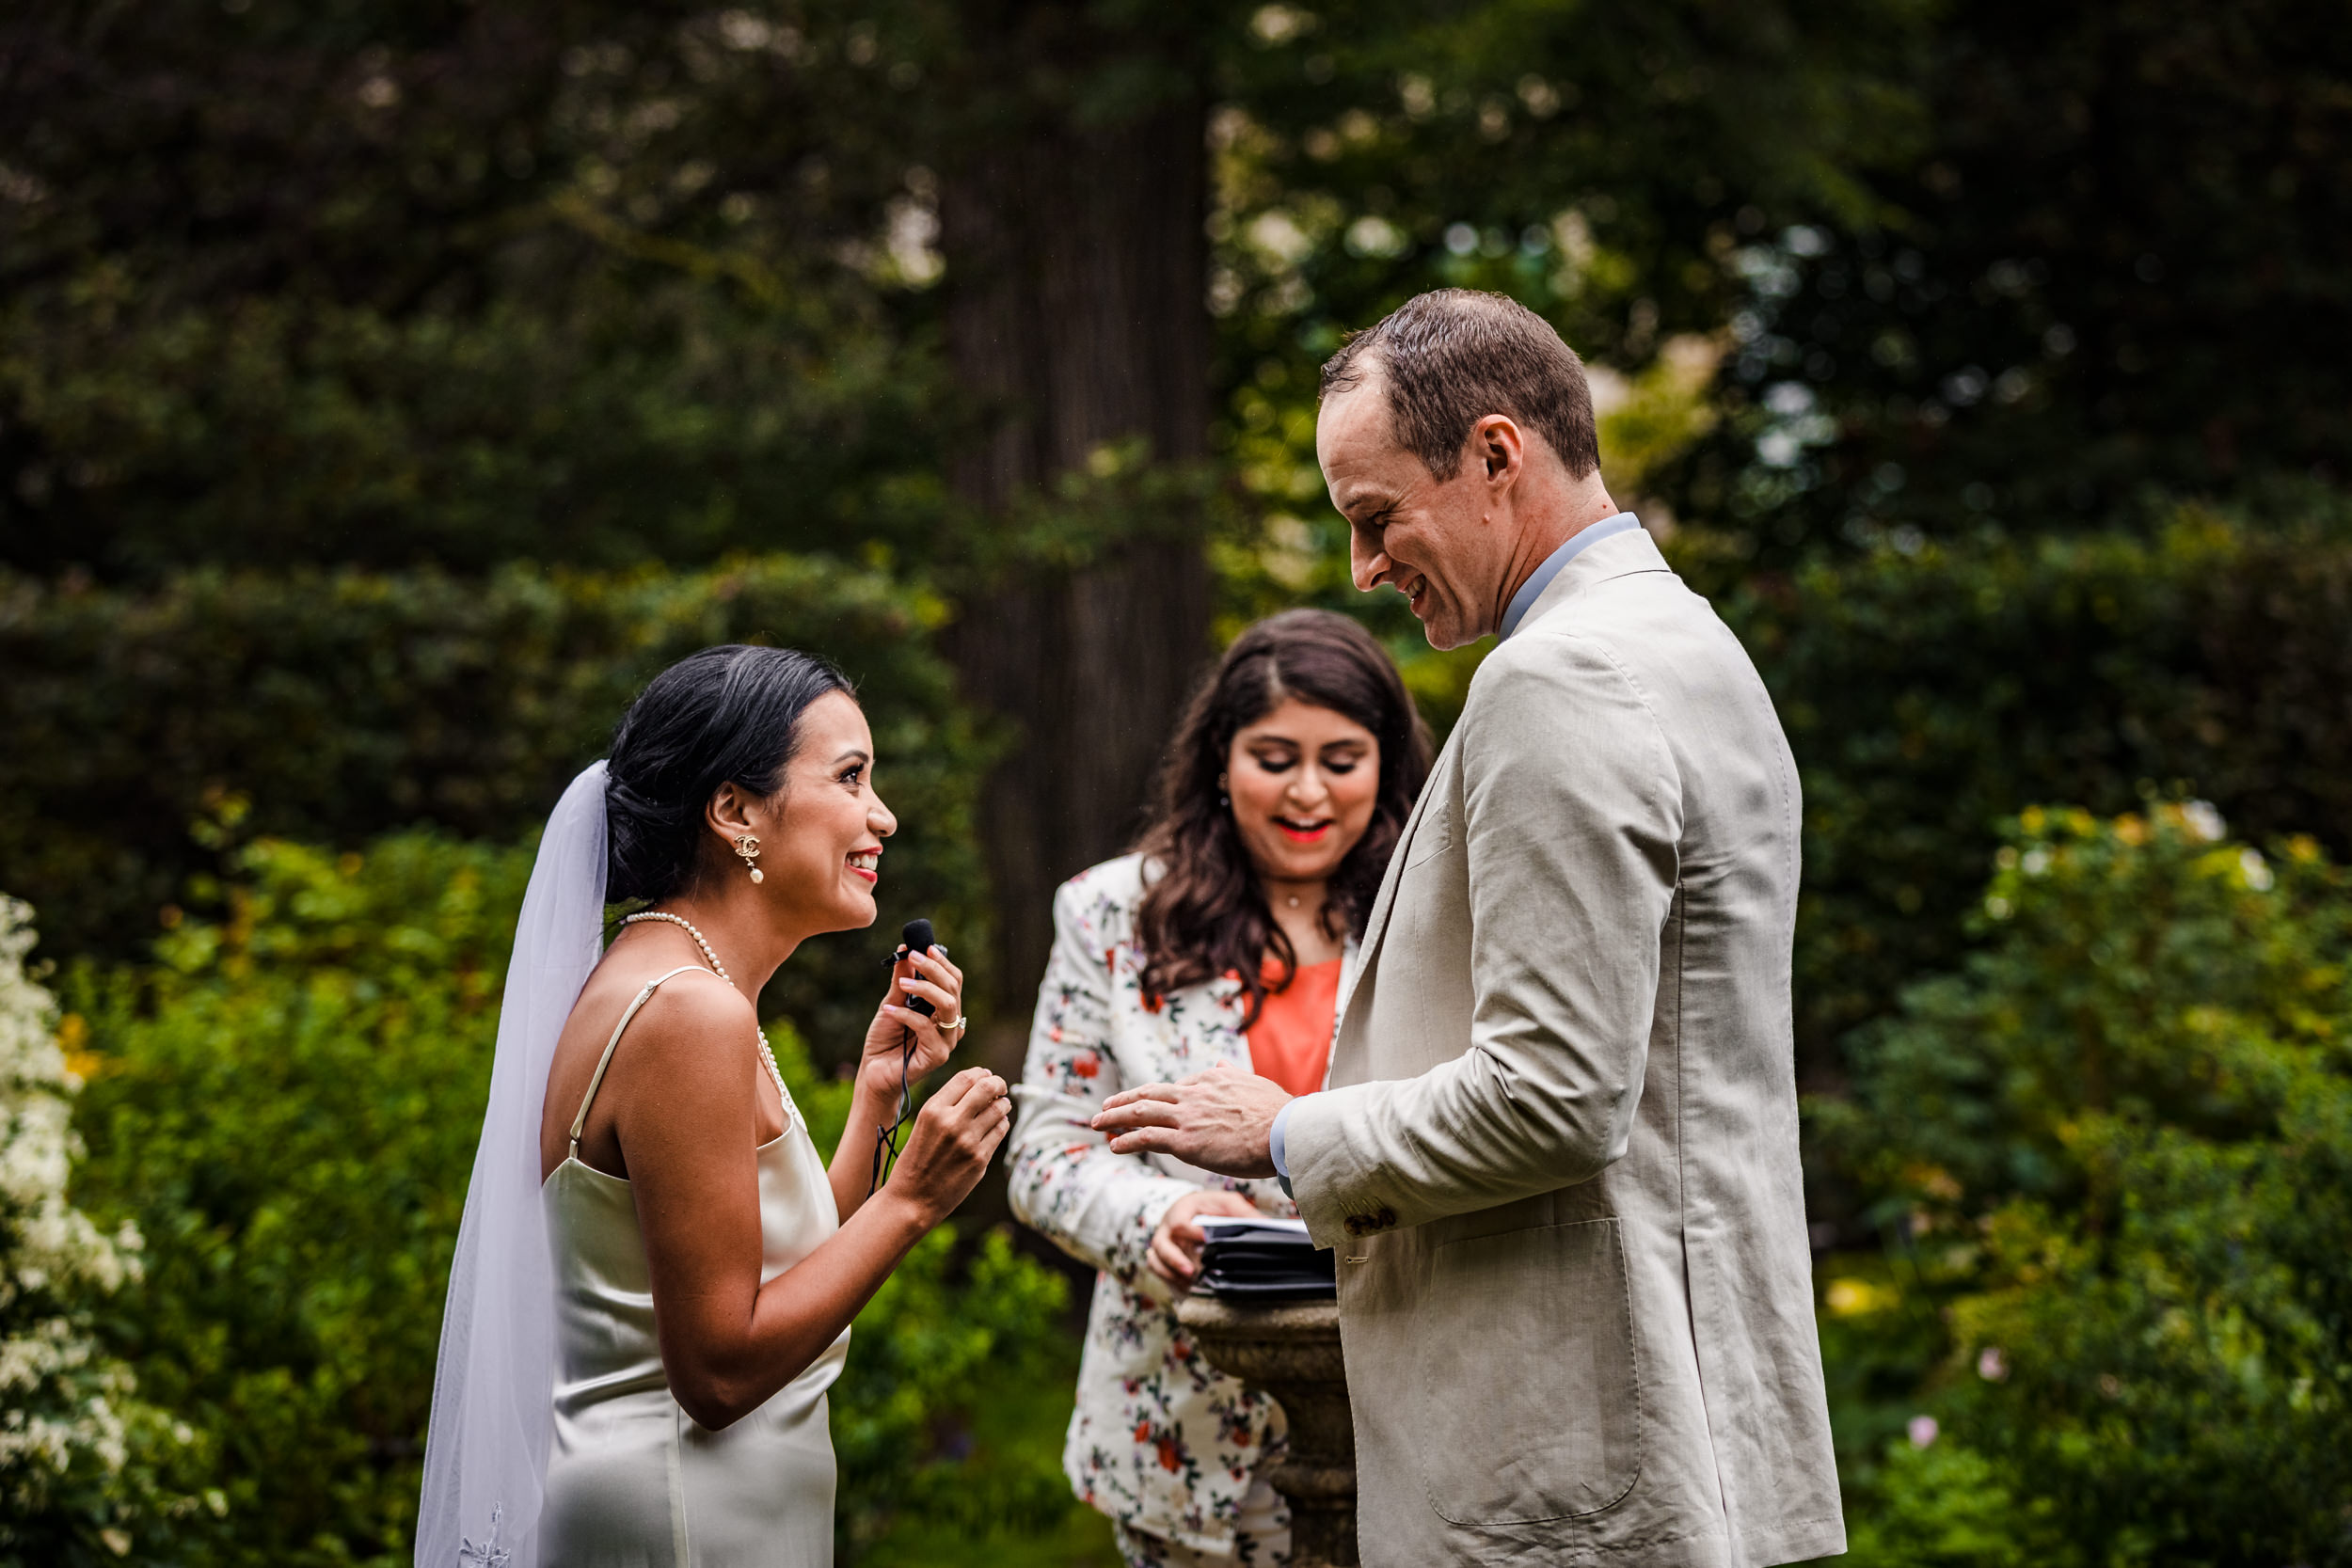 A couple shares their vows during a Shakespeare Garden micro wedding in Evanston.